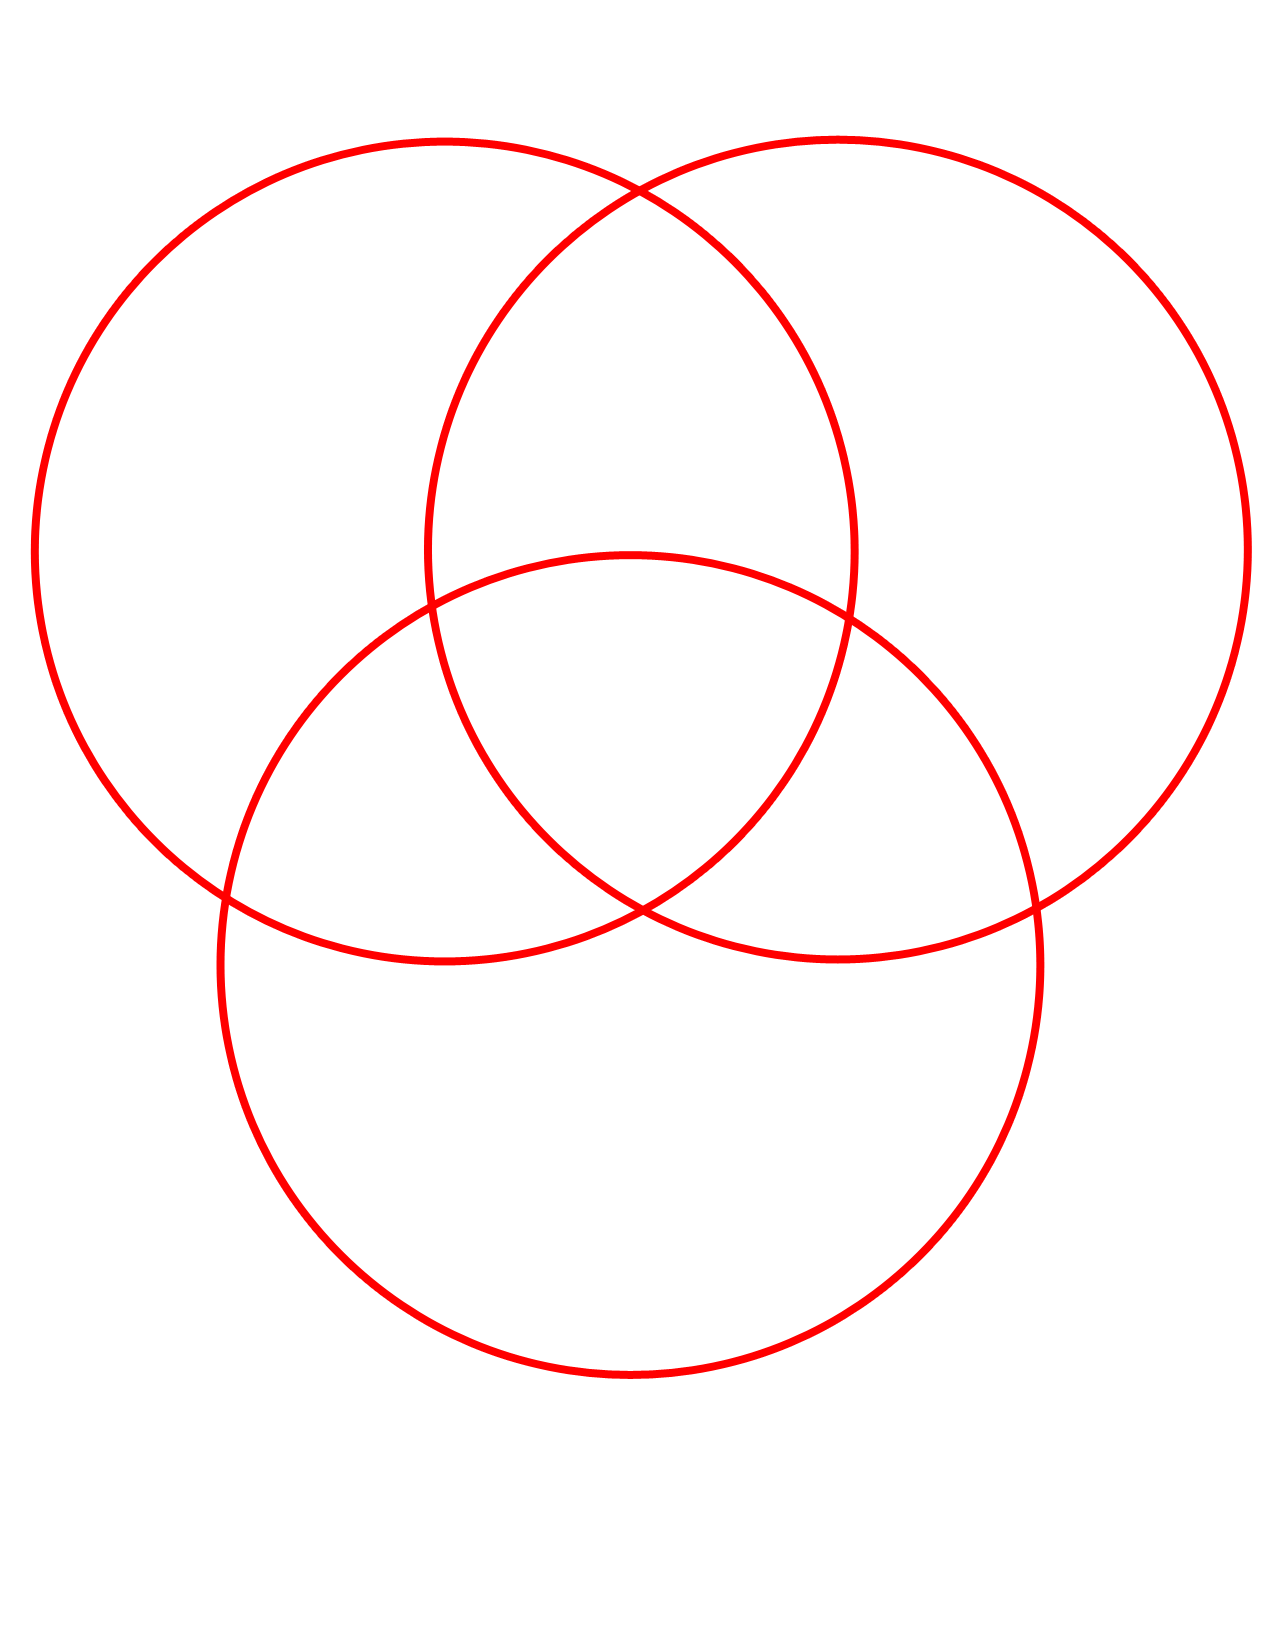 Нарисовать рисунок окружности. Круги Эйлера 3 круга. Три круга Эйлера в пересечении. Пересекающиеся круги. Пересечение кругов.